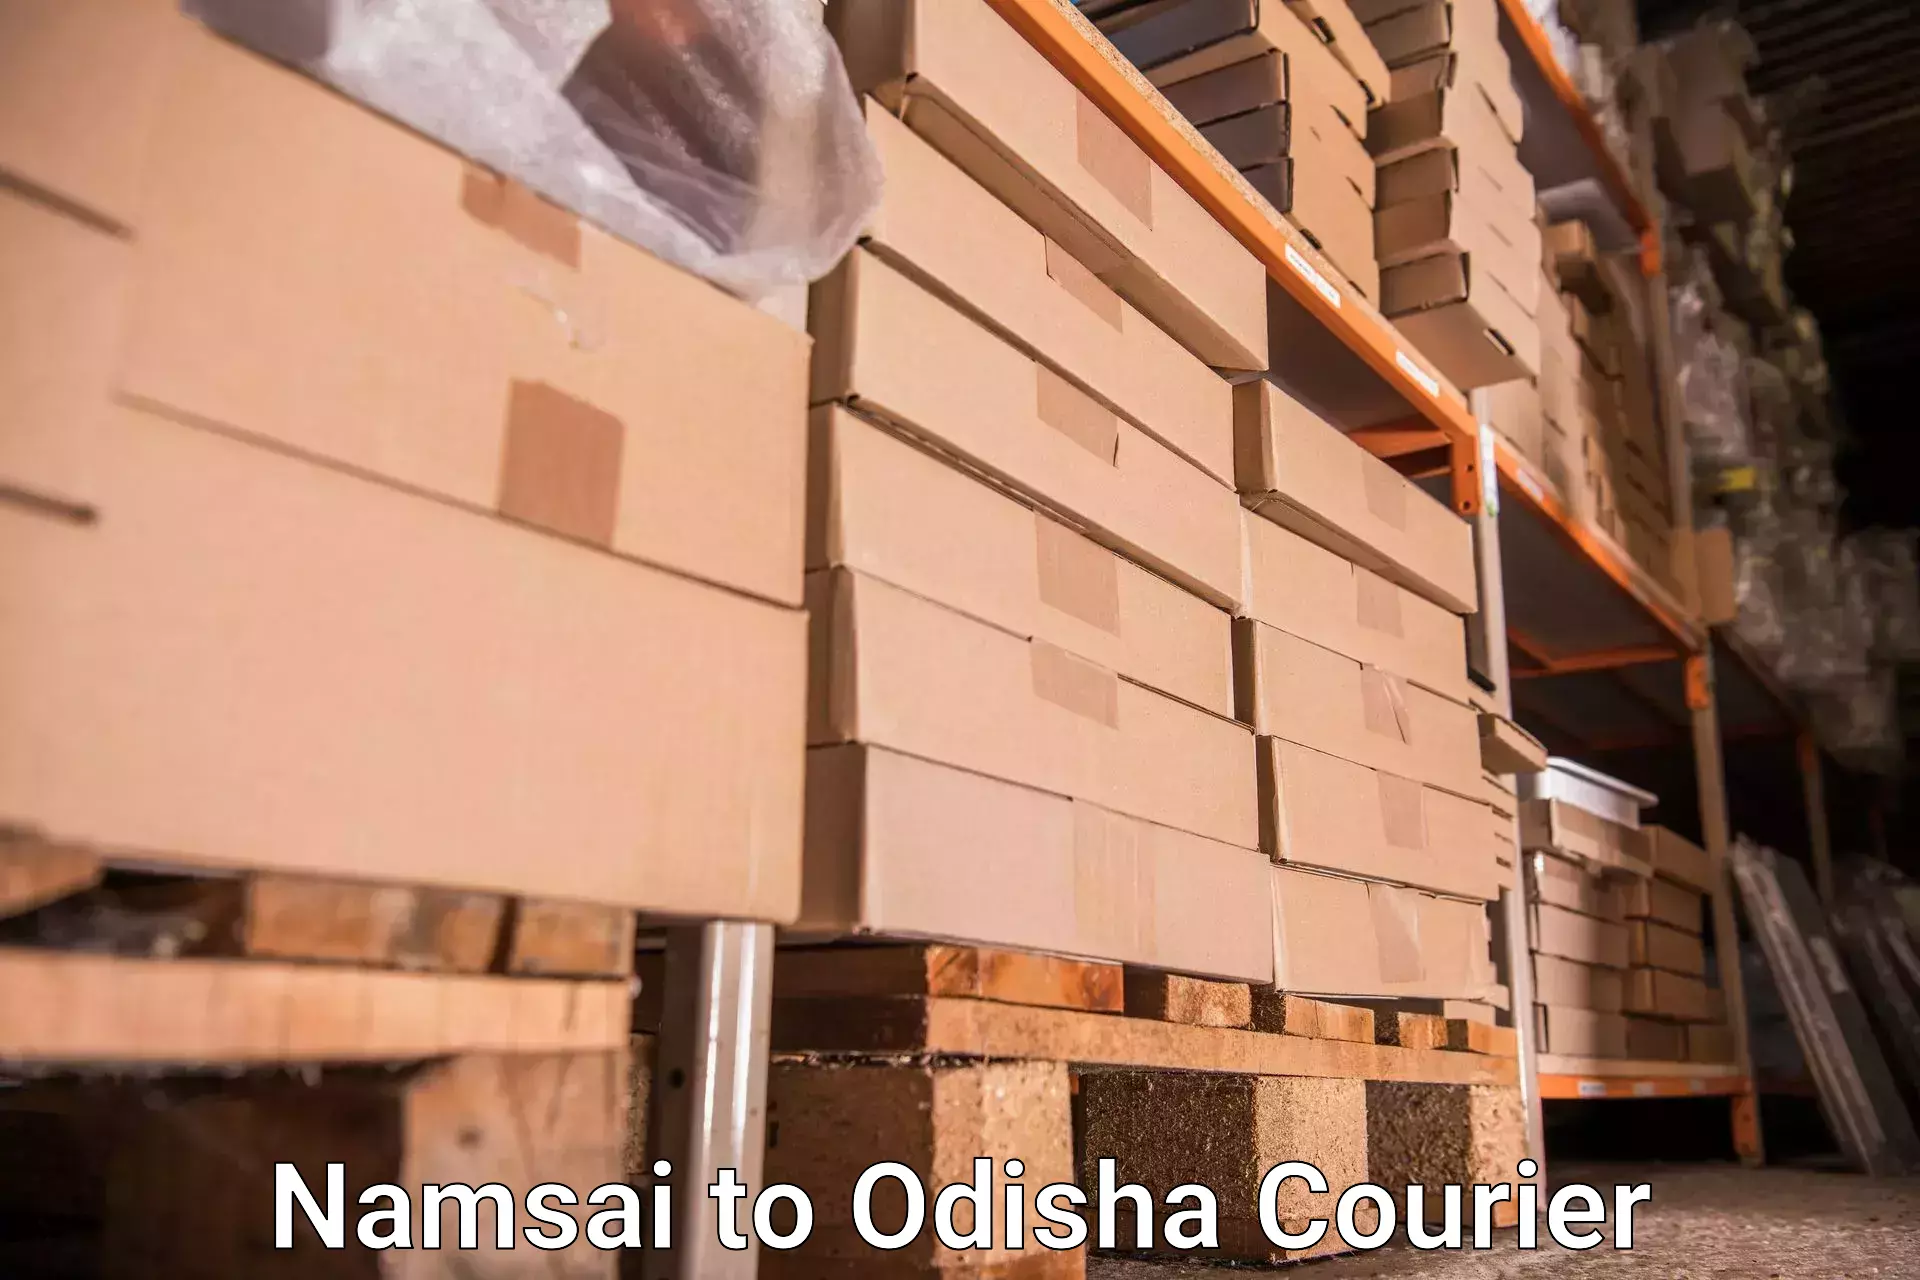 Baggage transport network Namsai to Kalahandi